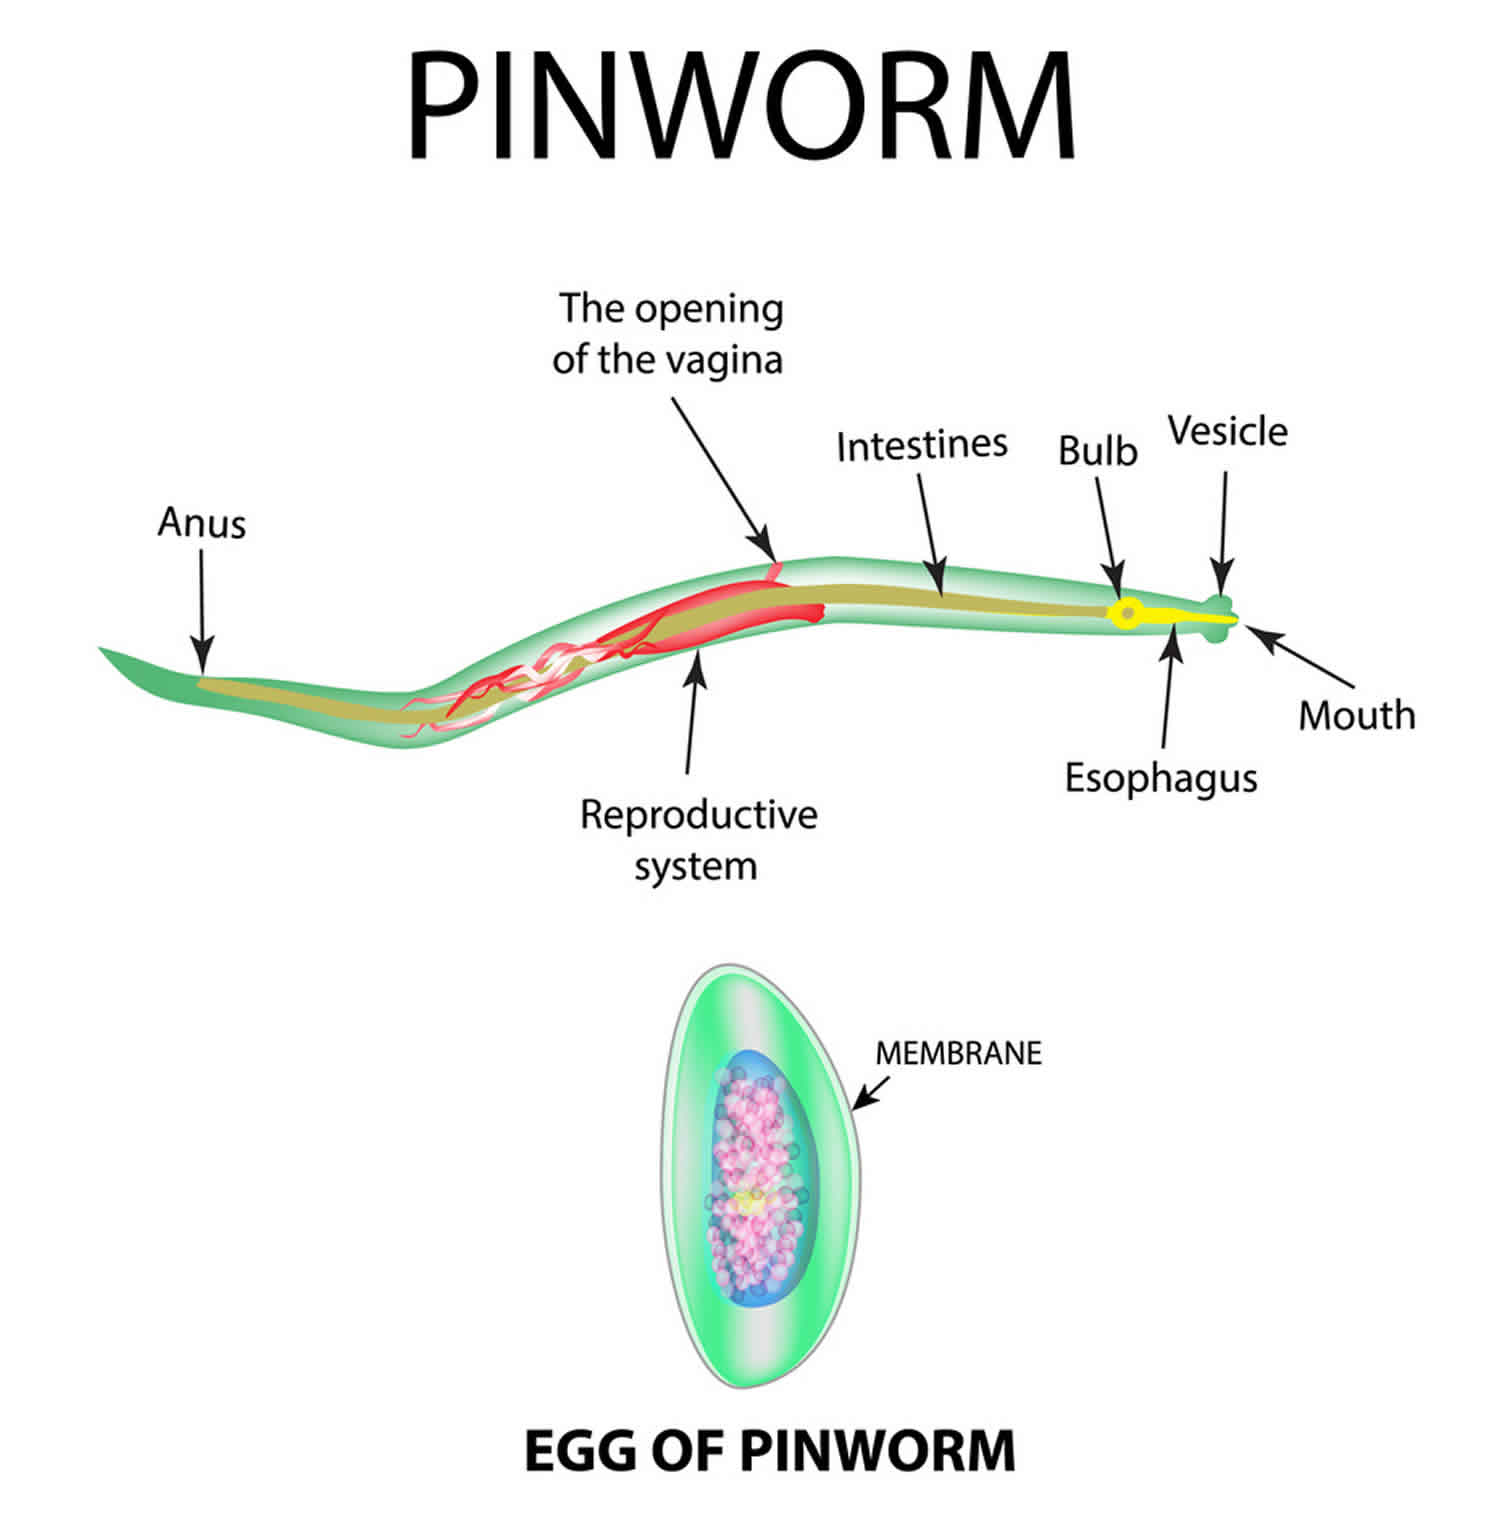 enterobiasis or pinworm)